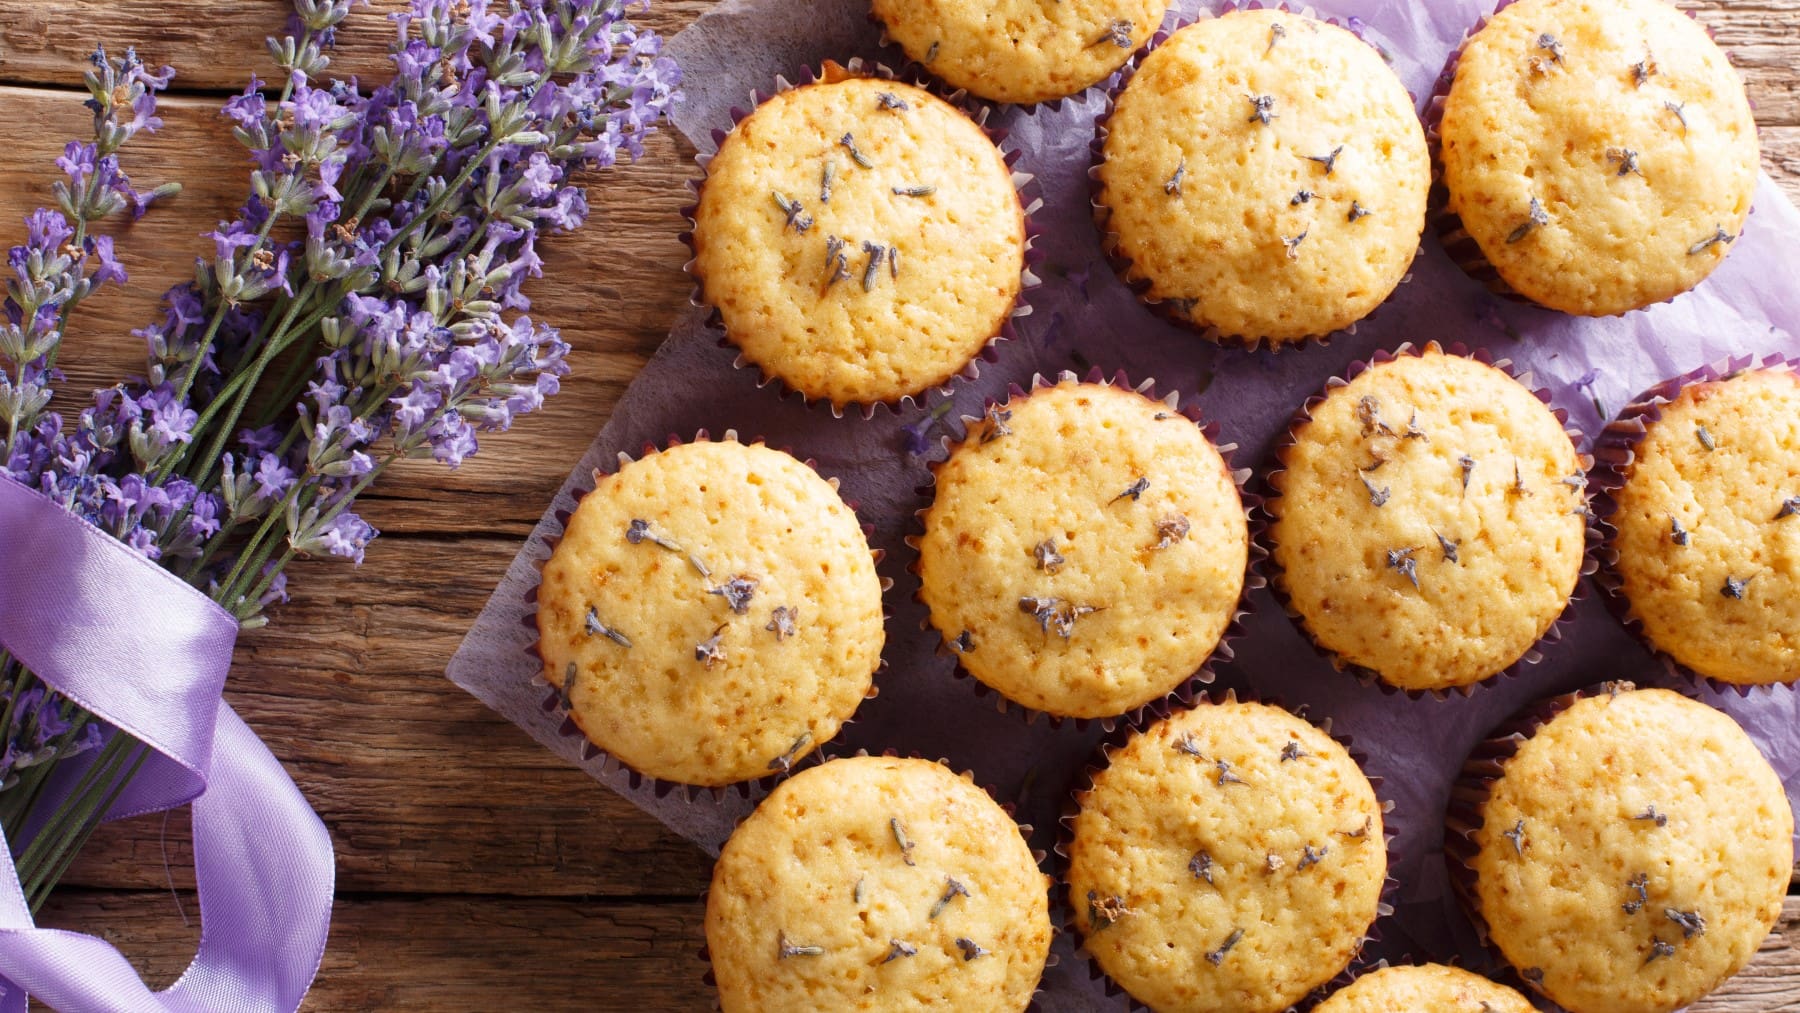 Draufsicht: Mehrere Lavendel-Muffins auf einem lila Tuch, daneben ein Bund Lavendel, Holzuntergrund.